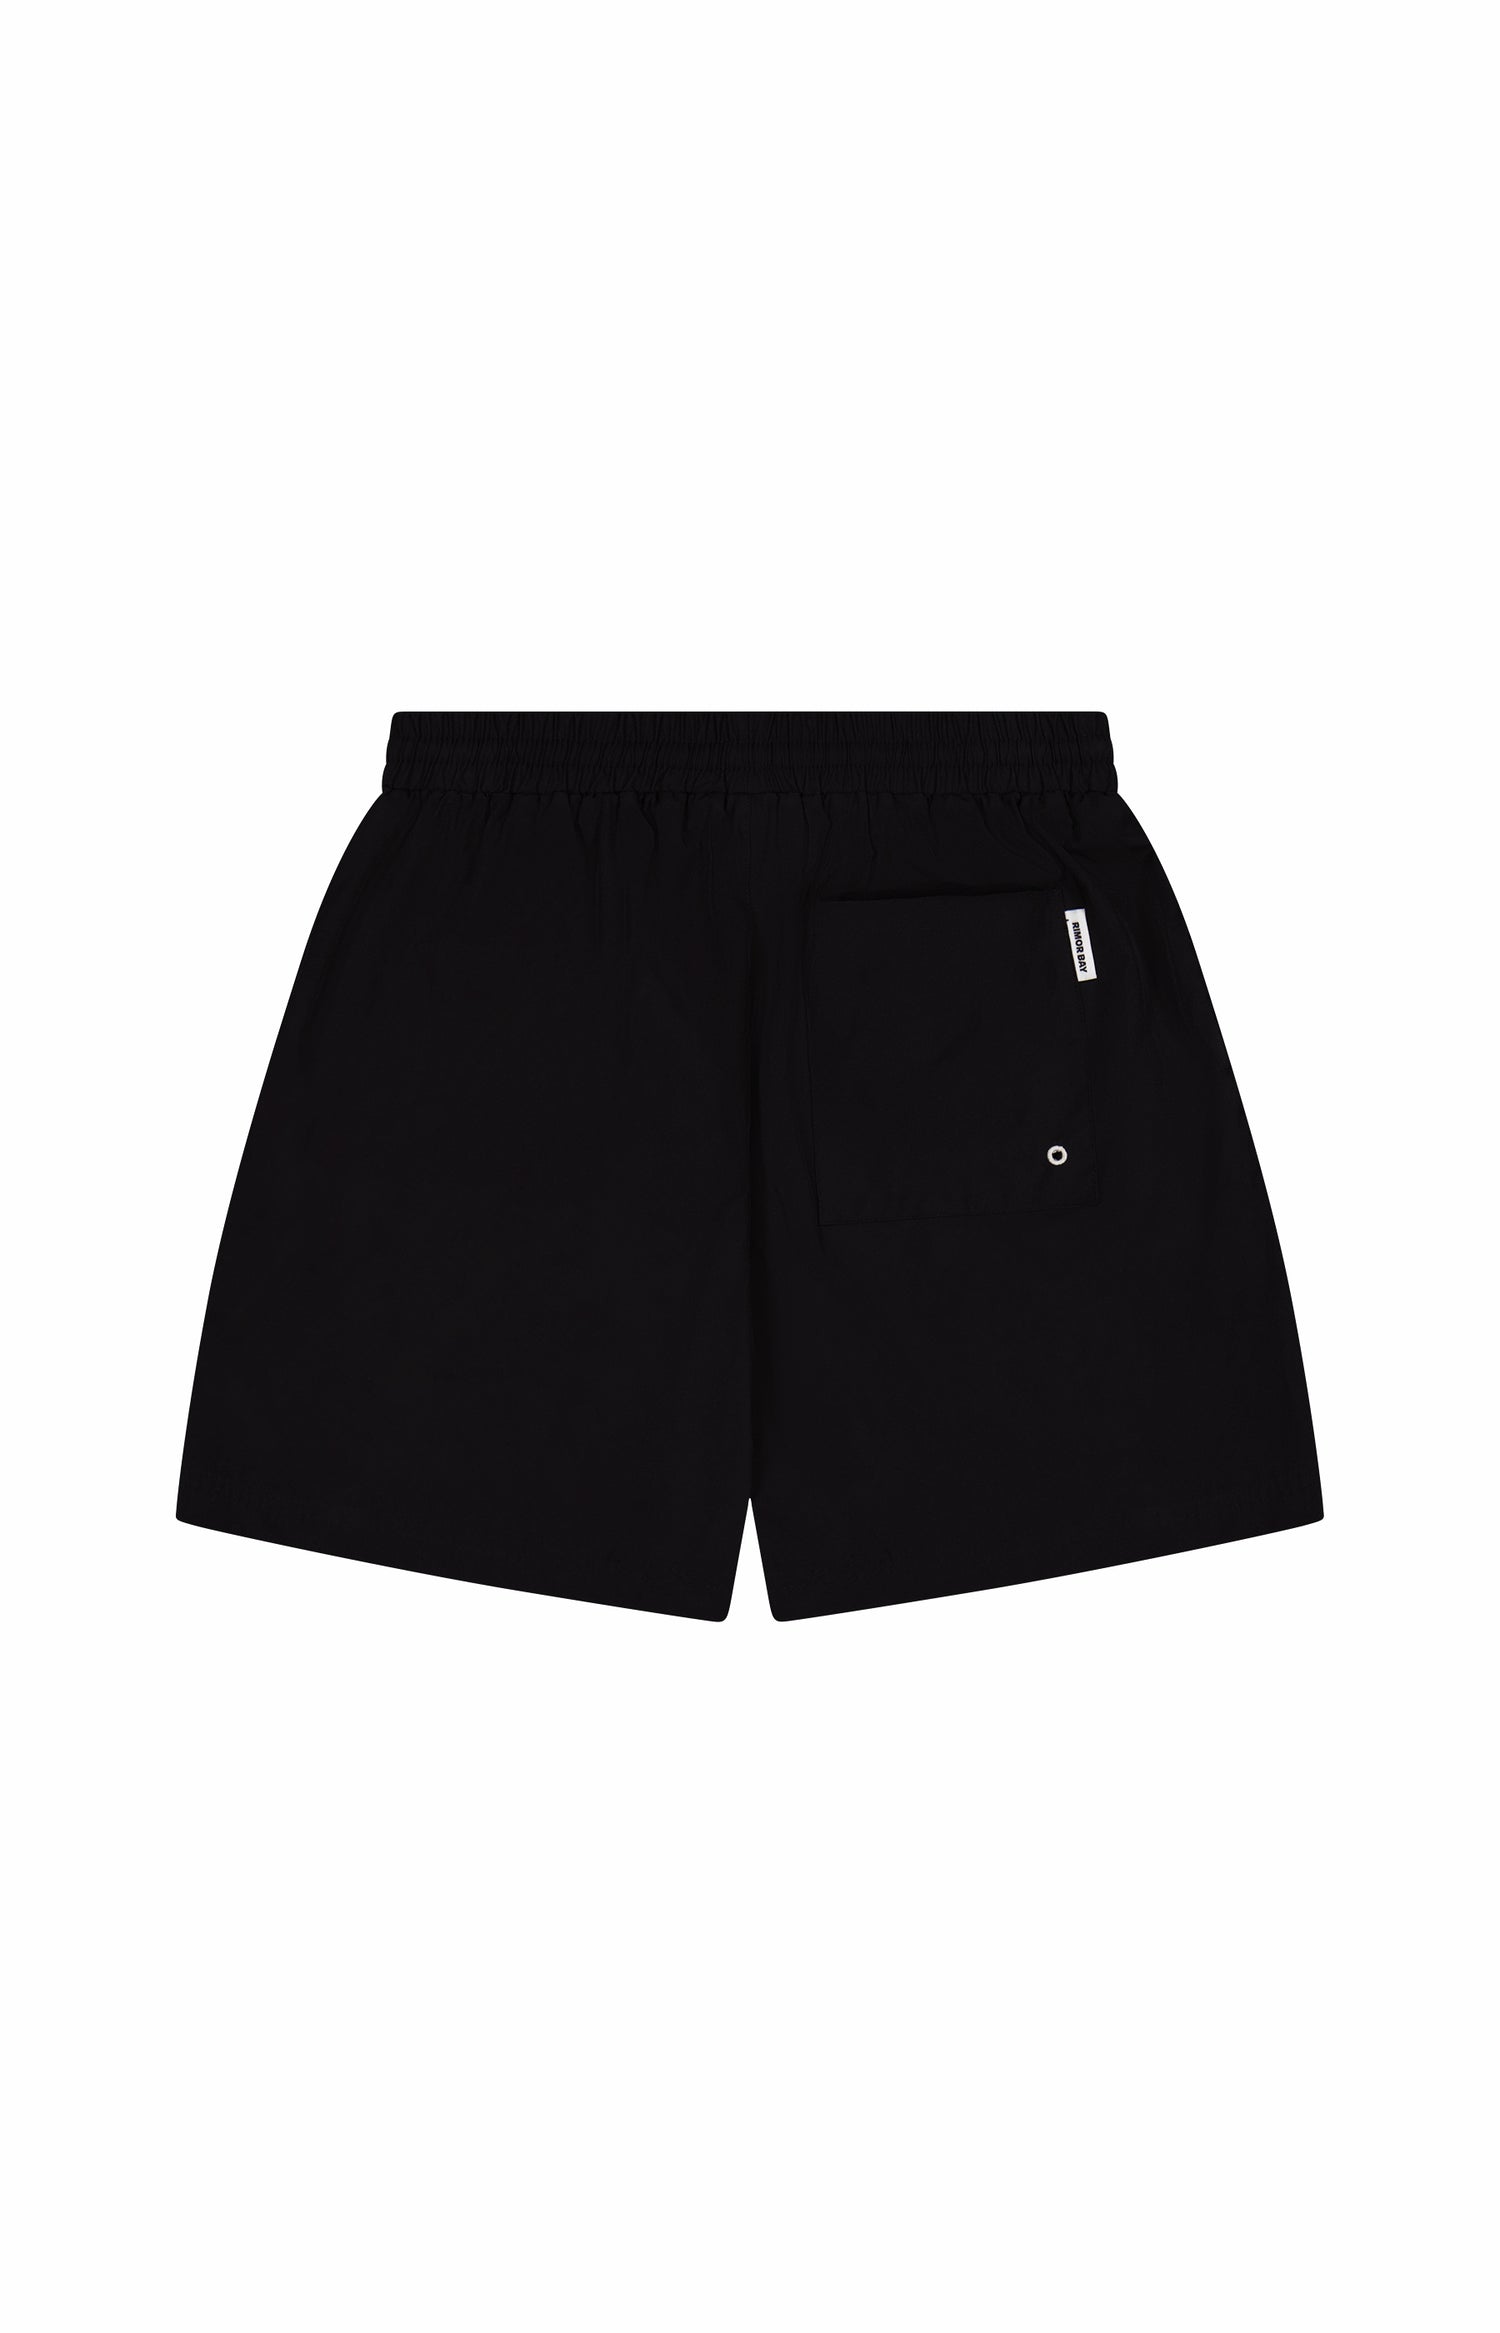 back of black nylon shorts with one pocket and elastic waist band